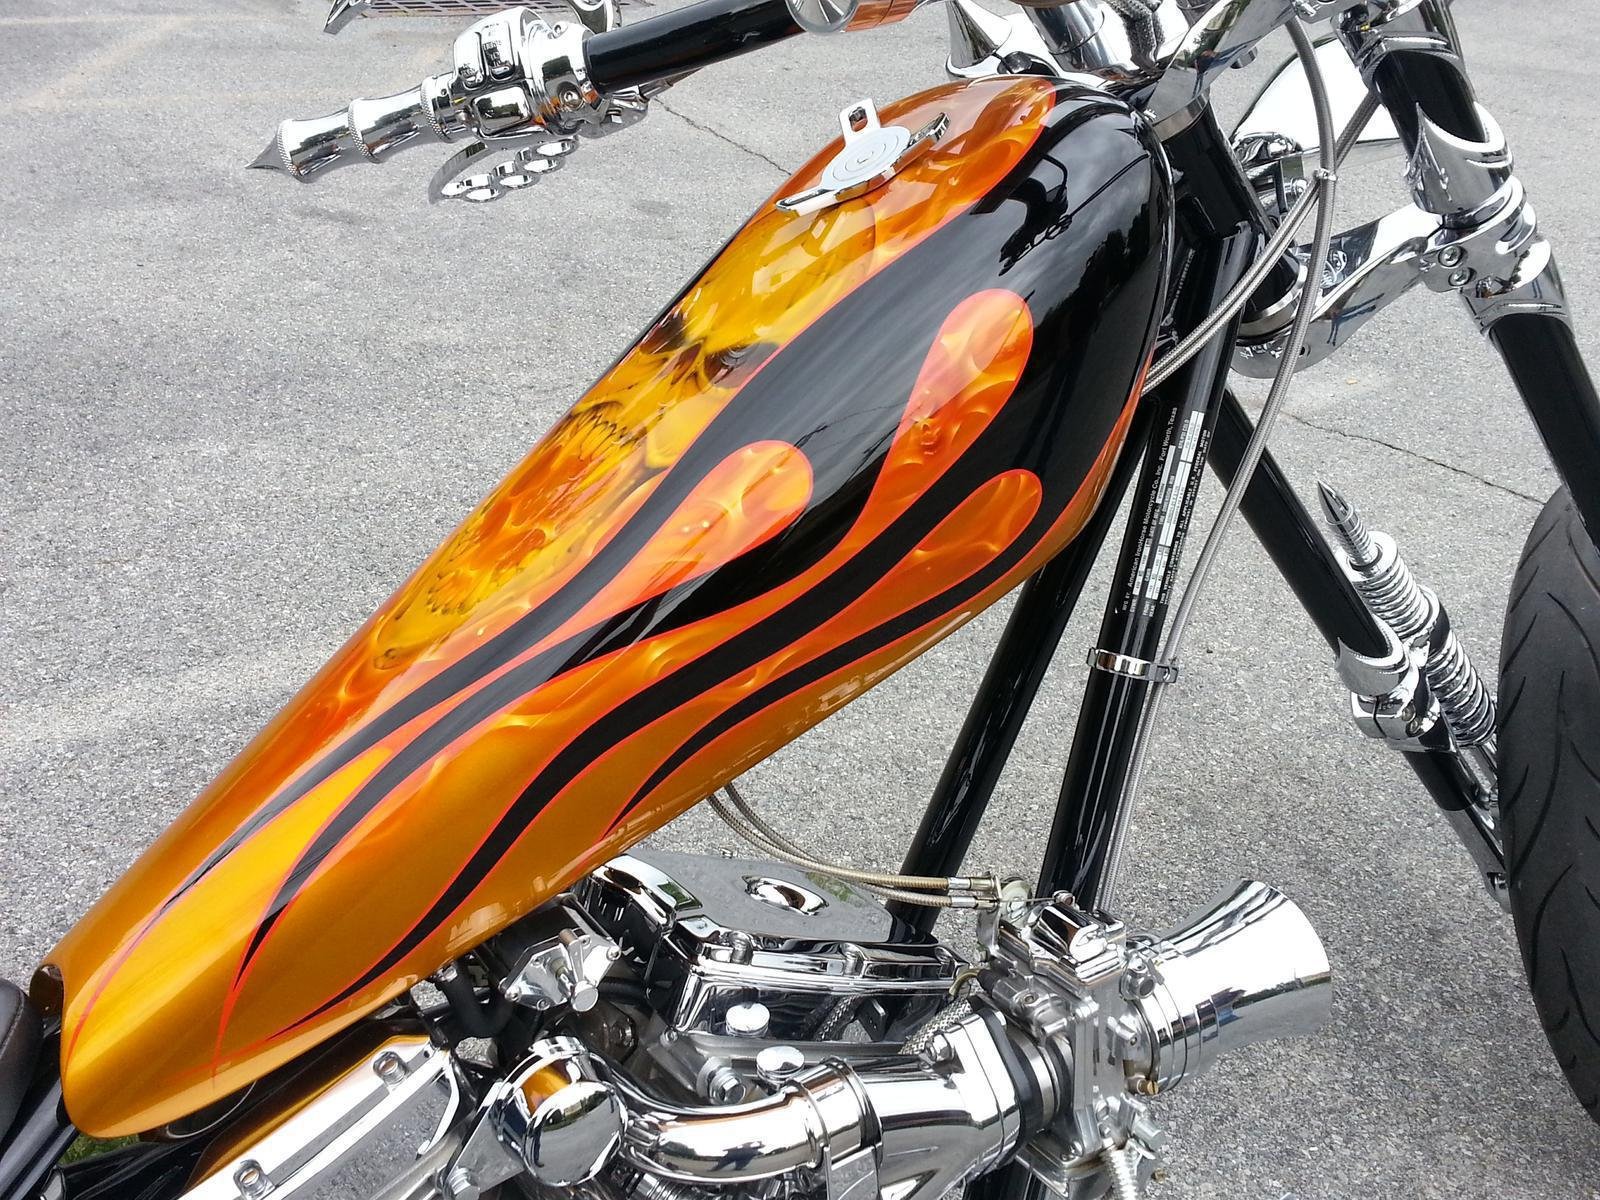 chopper, Motorbike, Custom, Bike, Motorcycle, Hot, Rod, Rod Wallpaper